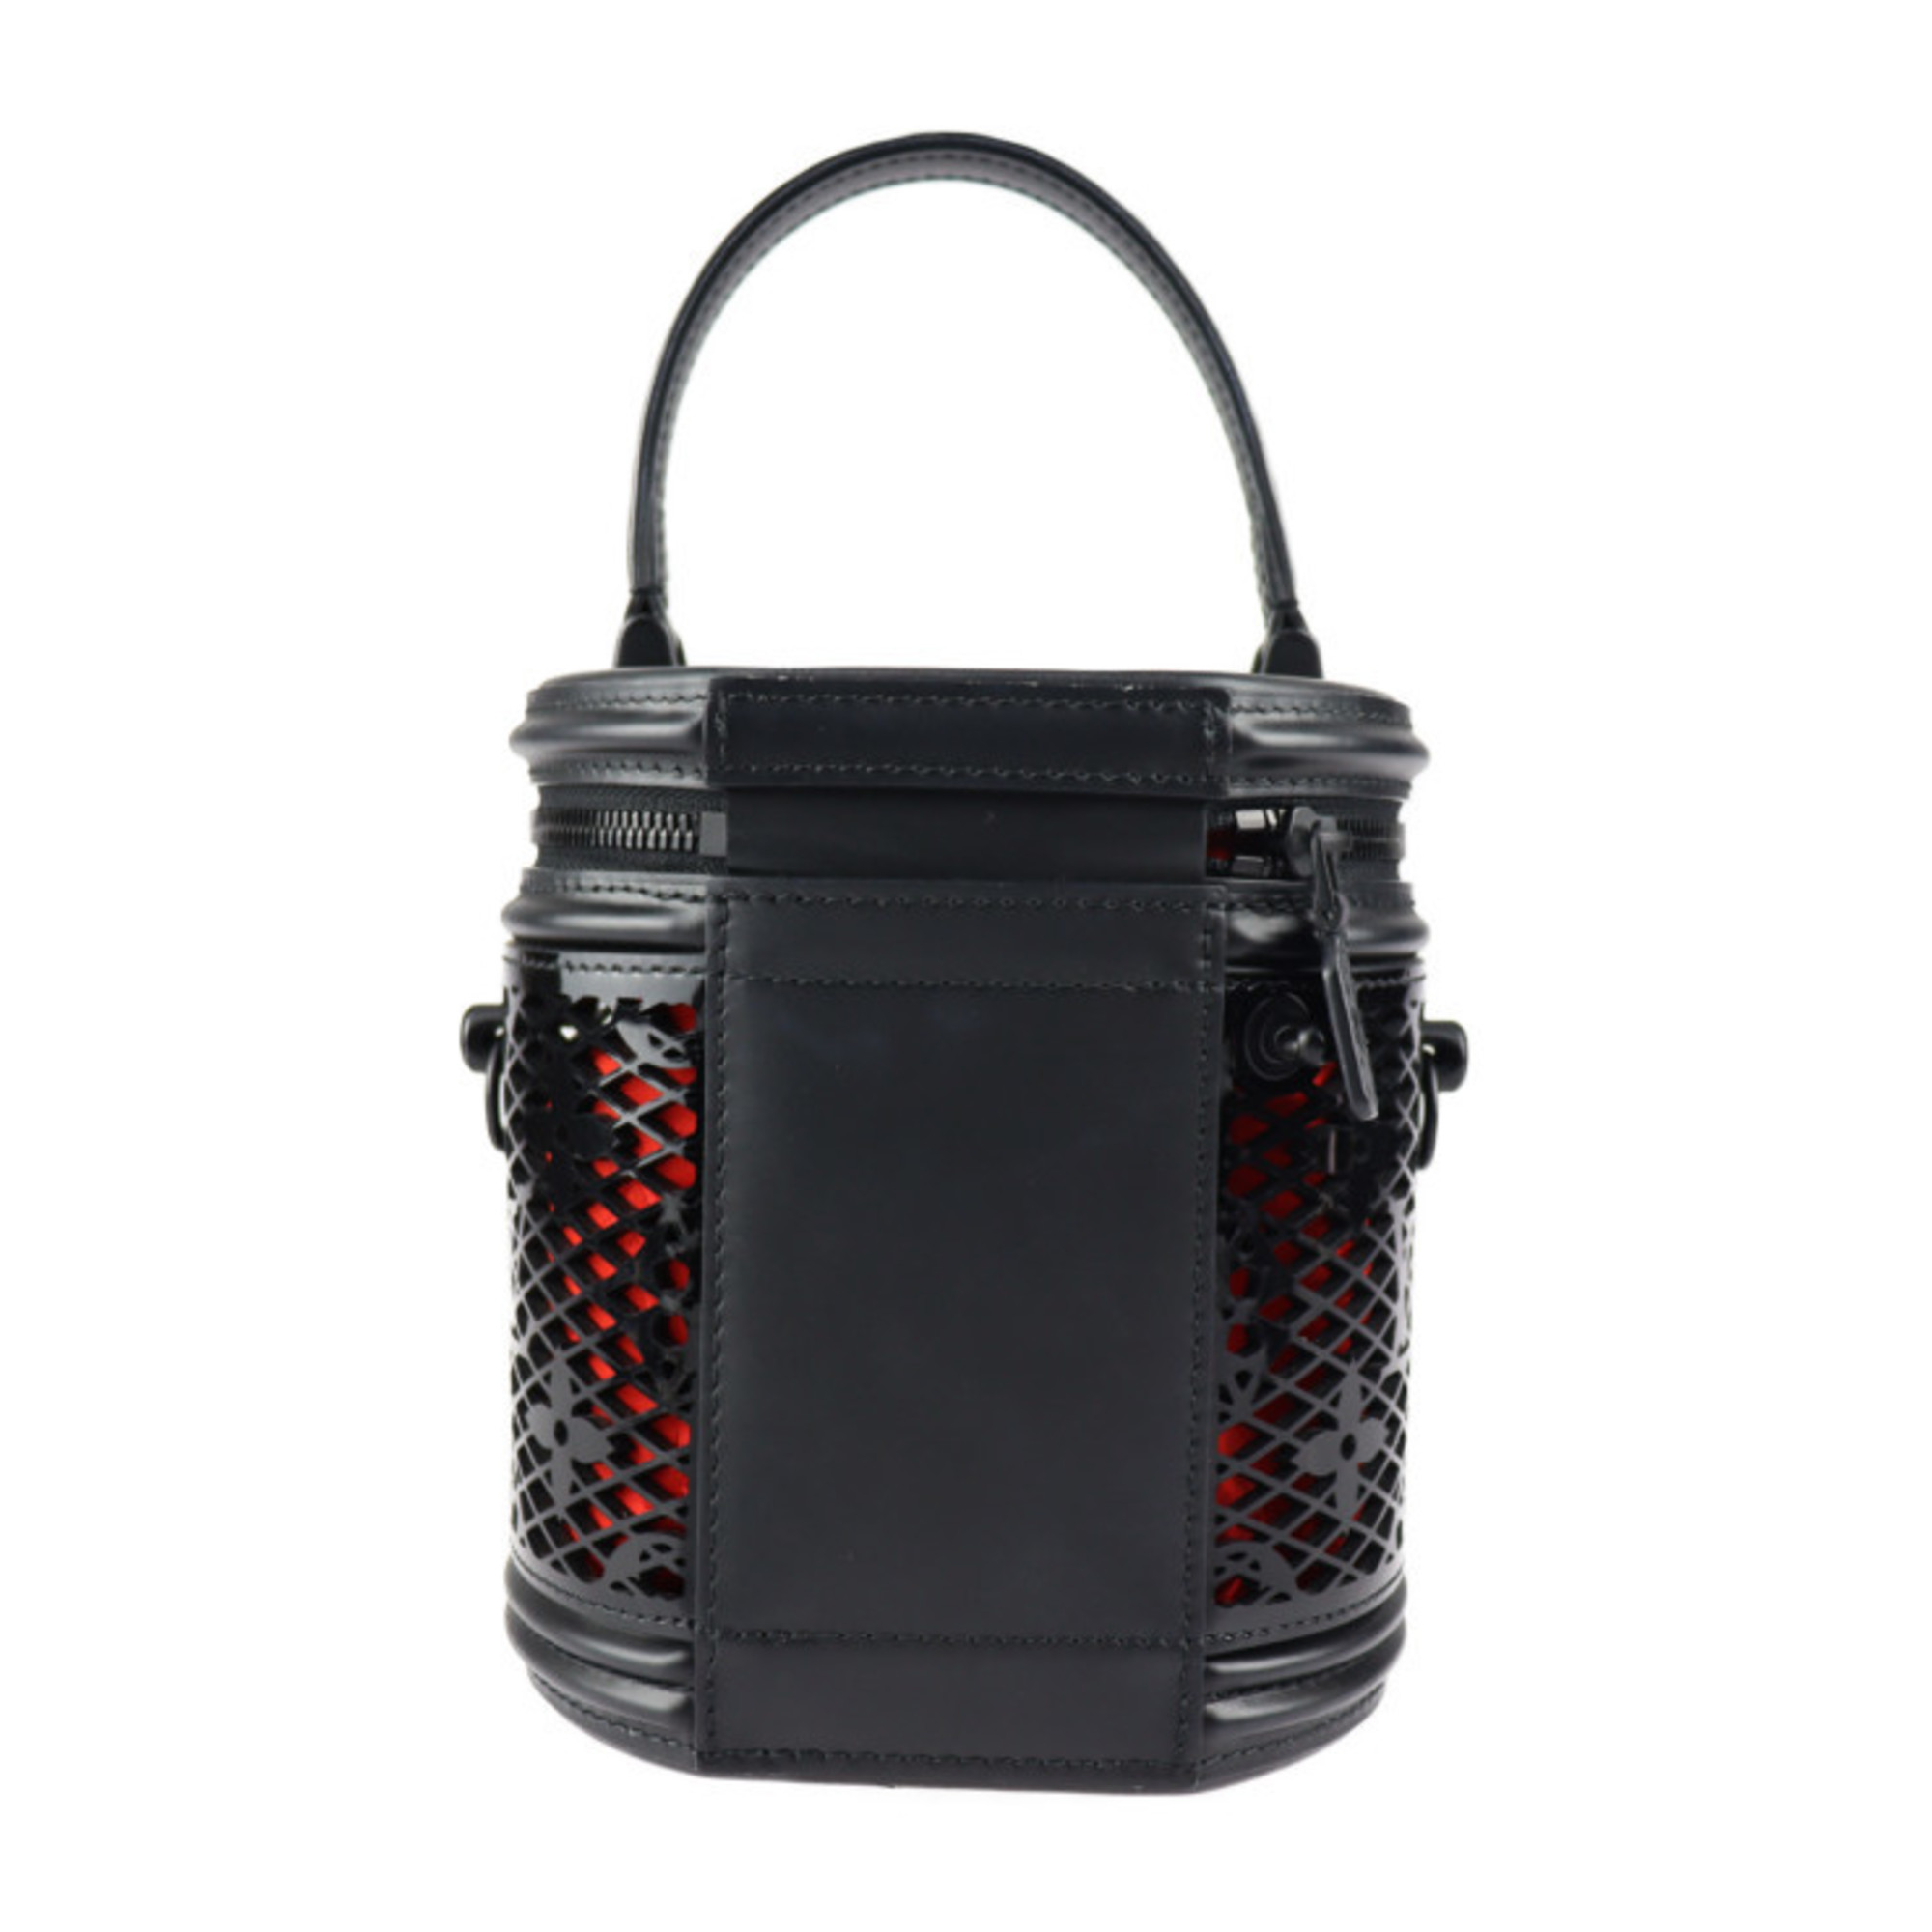 LOUIS VUITTON Louis Vuitton Cannes Monogram Lace Handbag M20363 Leather Black Vanity Bag 2WAY Shoulder